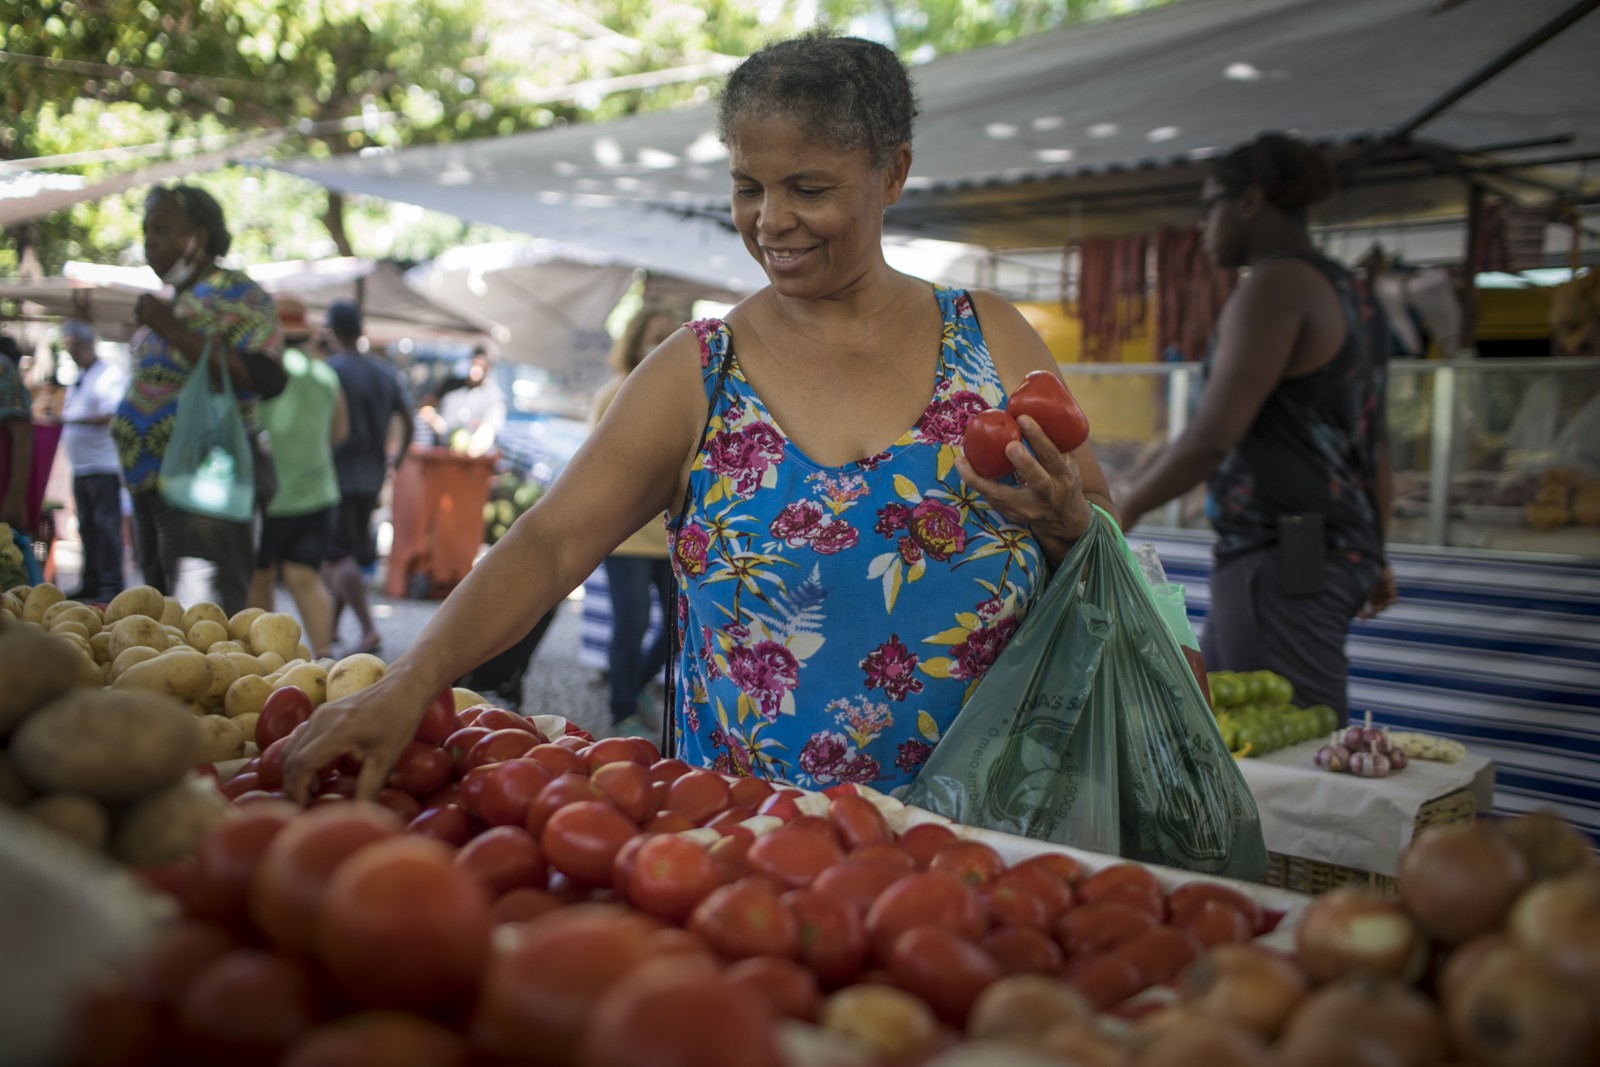 Secilma Souza compra tomates na feira da Praça General Osório, em Ipanema: "escolho qualidade, mas como está caro, diminuí o consumo". Hortaliças e verduras subiram 40,29% em 2022Agência O Globo